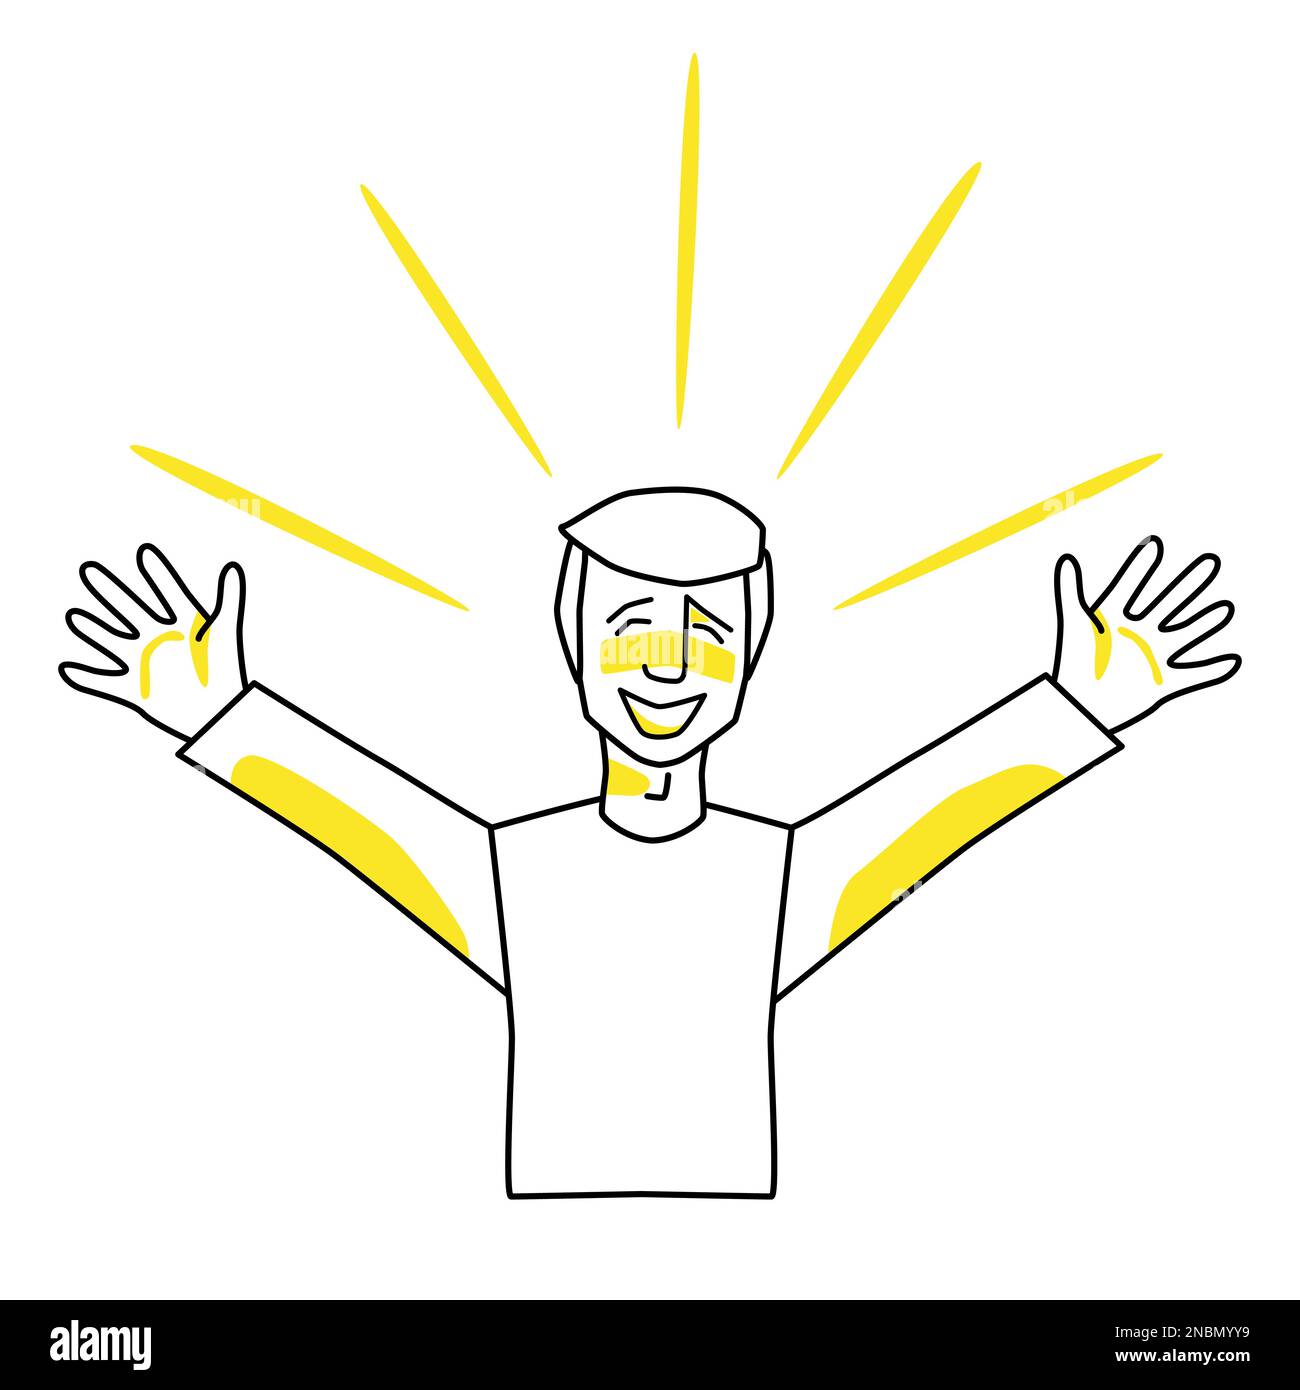 Uomo felice, emozione di felicità. Gioioso personaggio maschile, line art, disegno a mano vettore stile schizzo con macchie gialle. Illustrazione Vettoriale